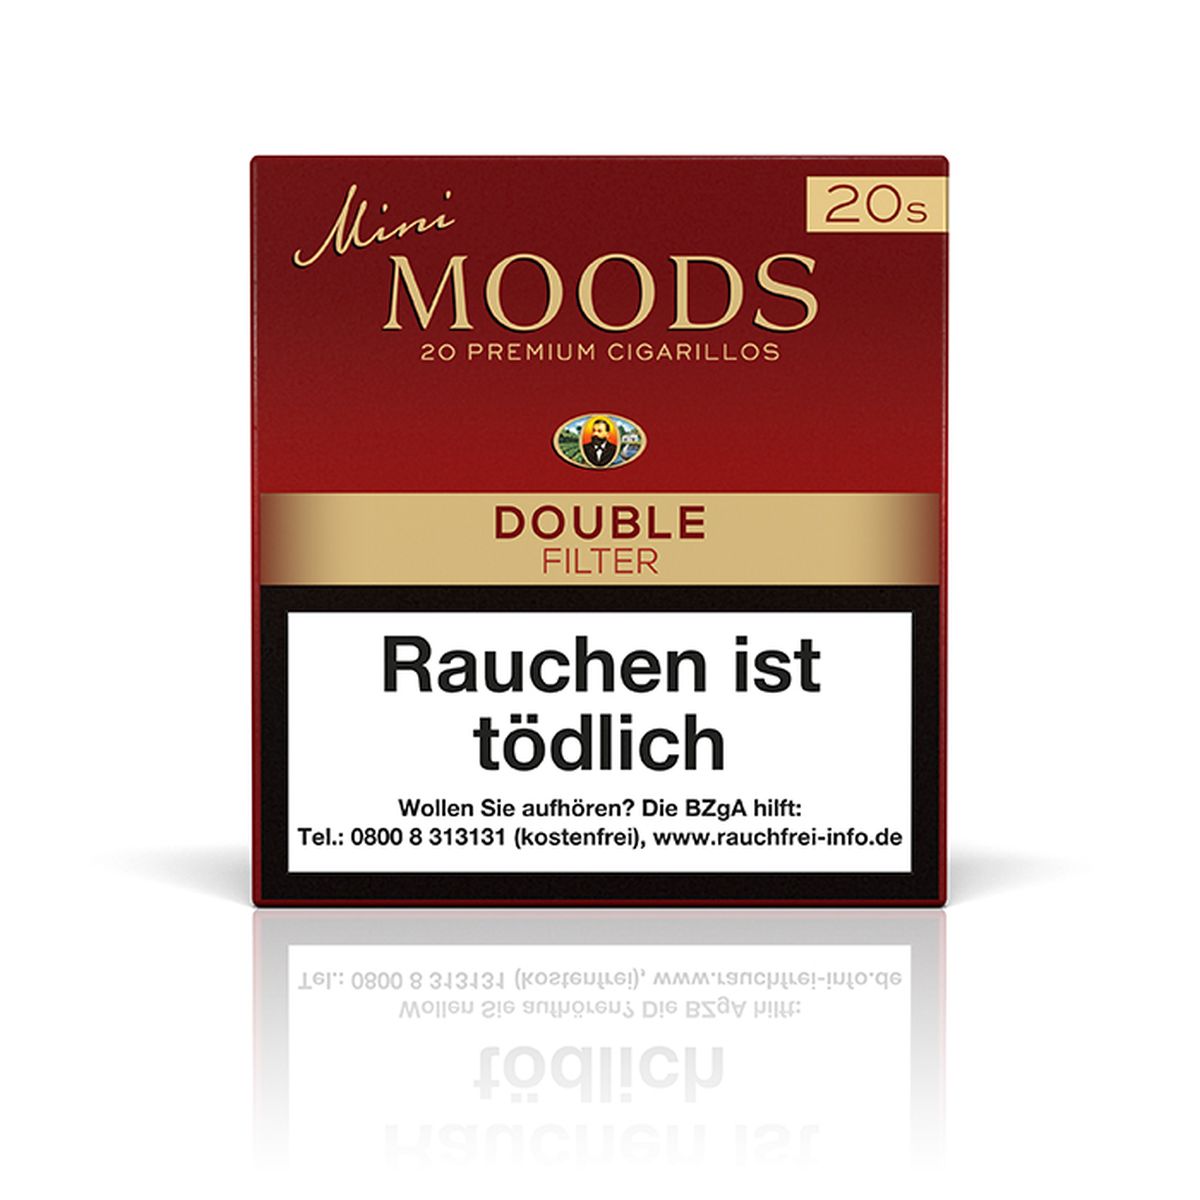 Moods Moods Mini Double Filter bei www.Tabakring.de kaufen